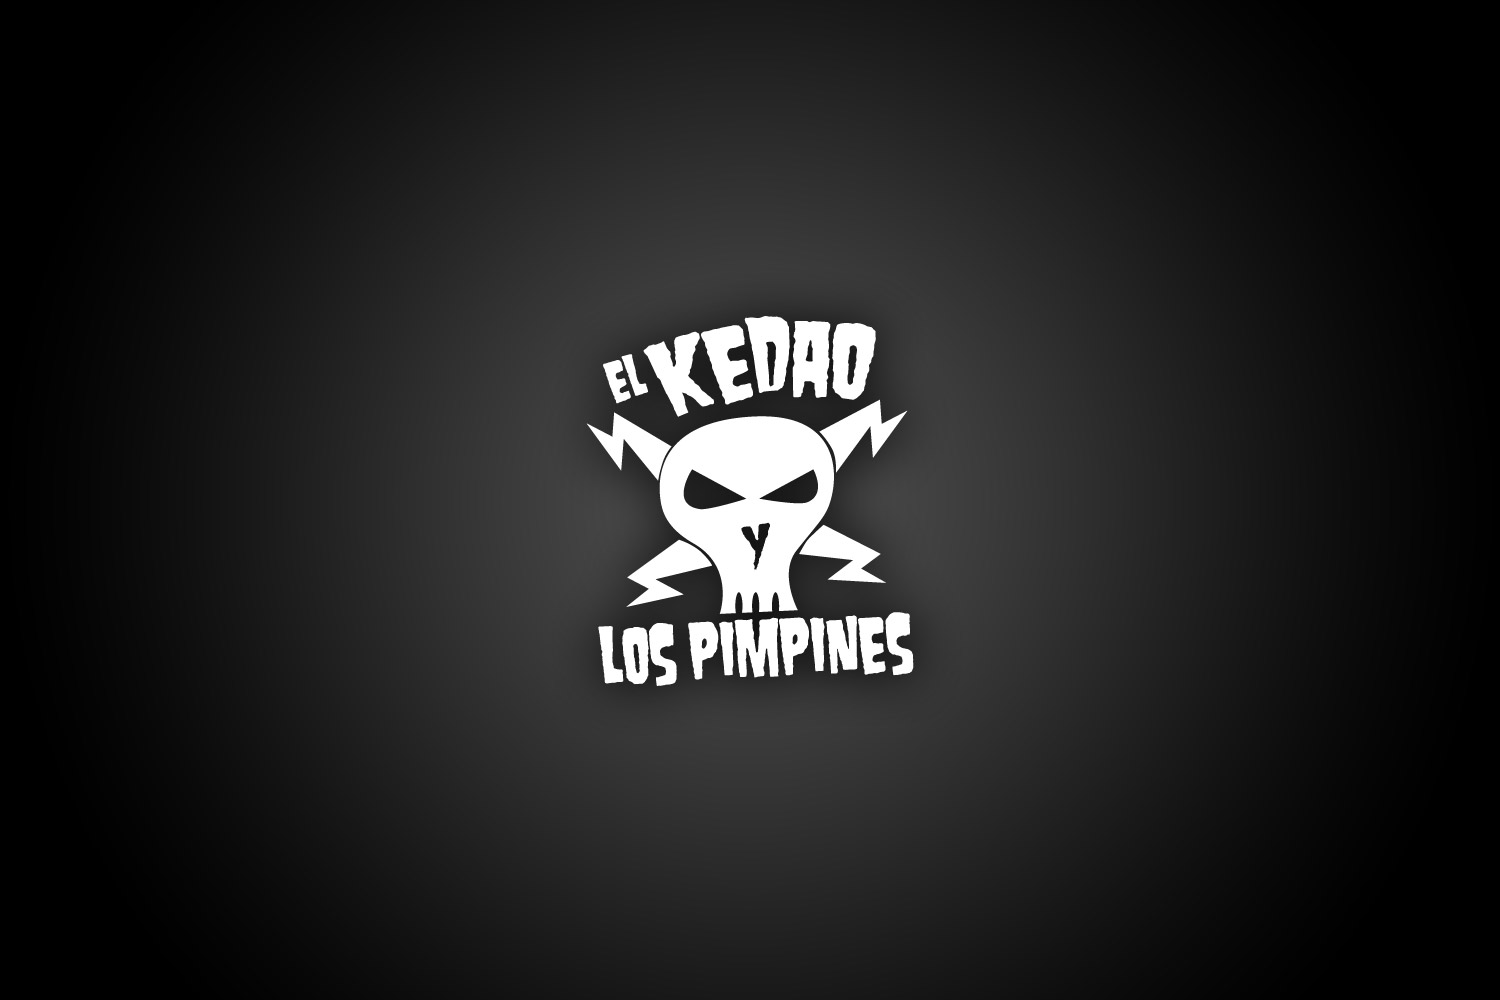 El kedao y los pimpines logo